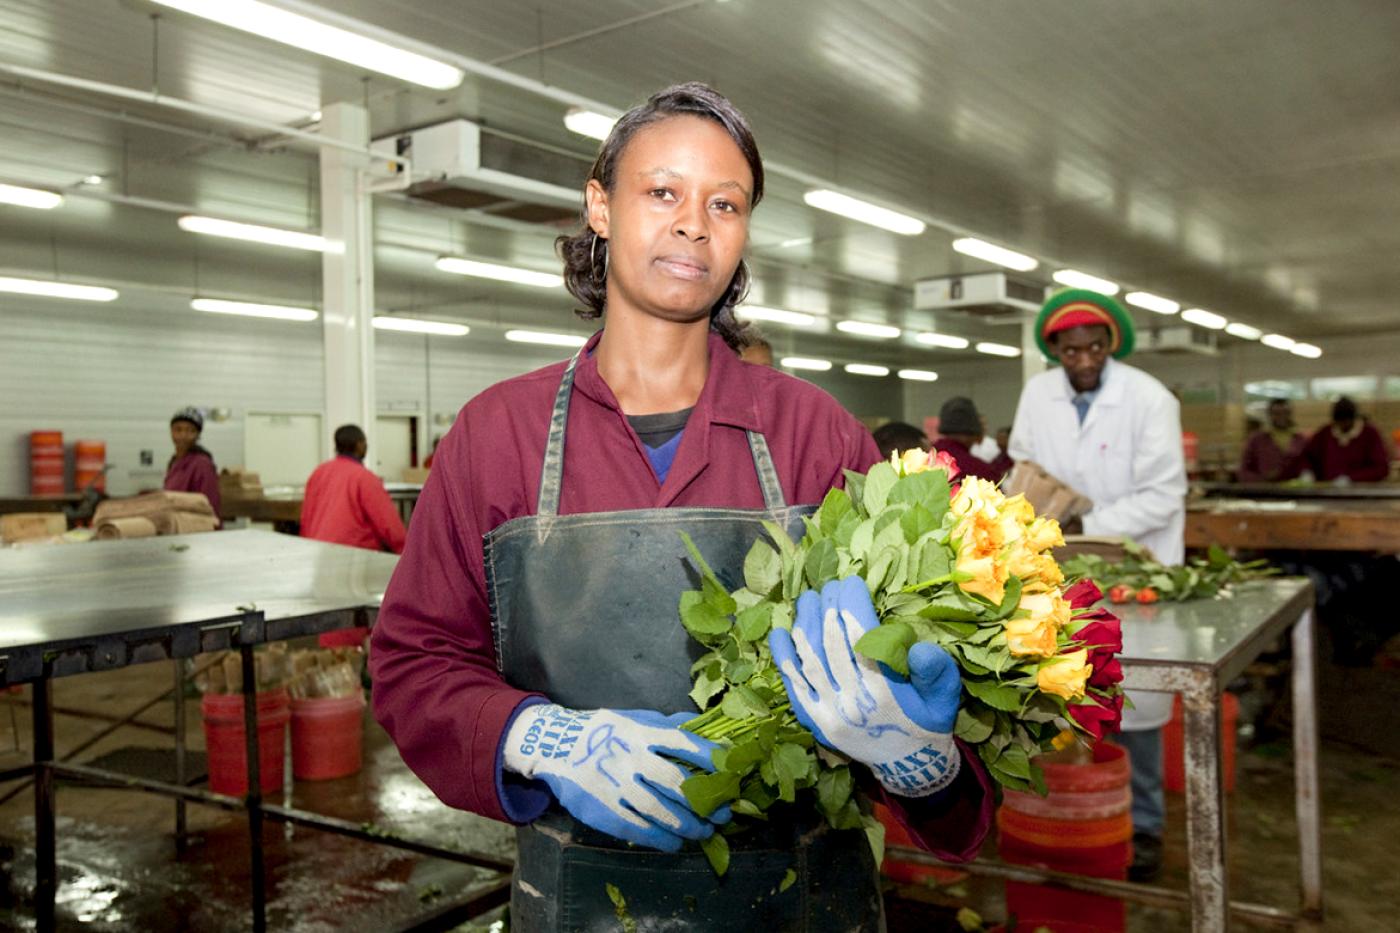 Arbeiterin hält Strauß mit Rosen in Fabrikshalle in der Hand und schaut in die Kamera